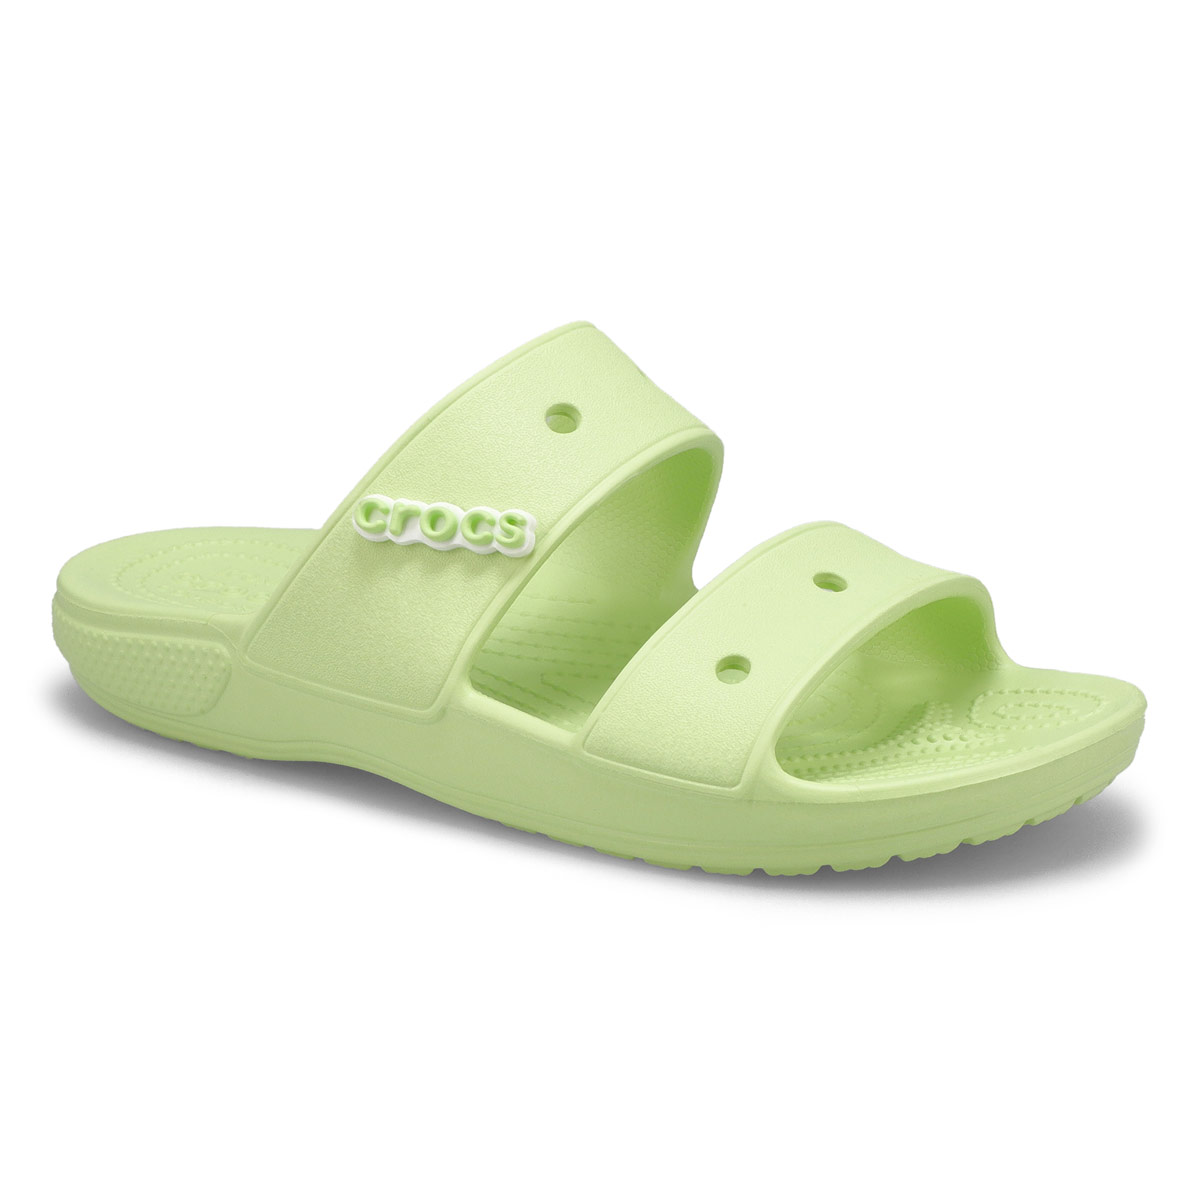 Crocs Women's Classic Crocs Slide Sandal - Pu | SoftMoc.com